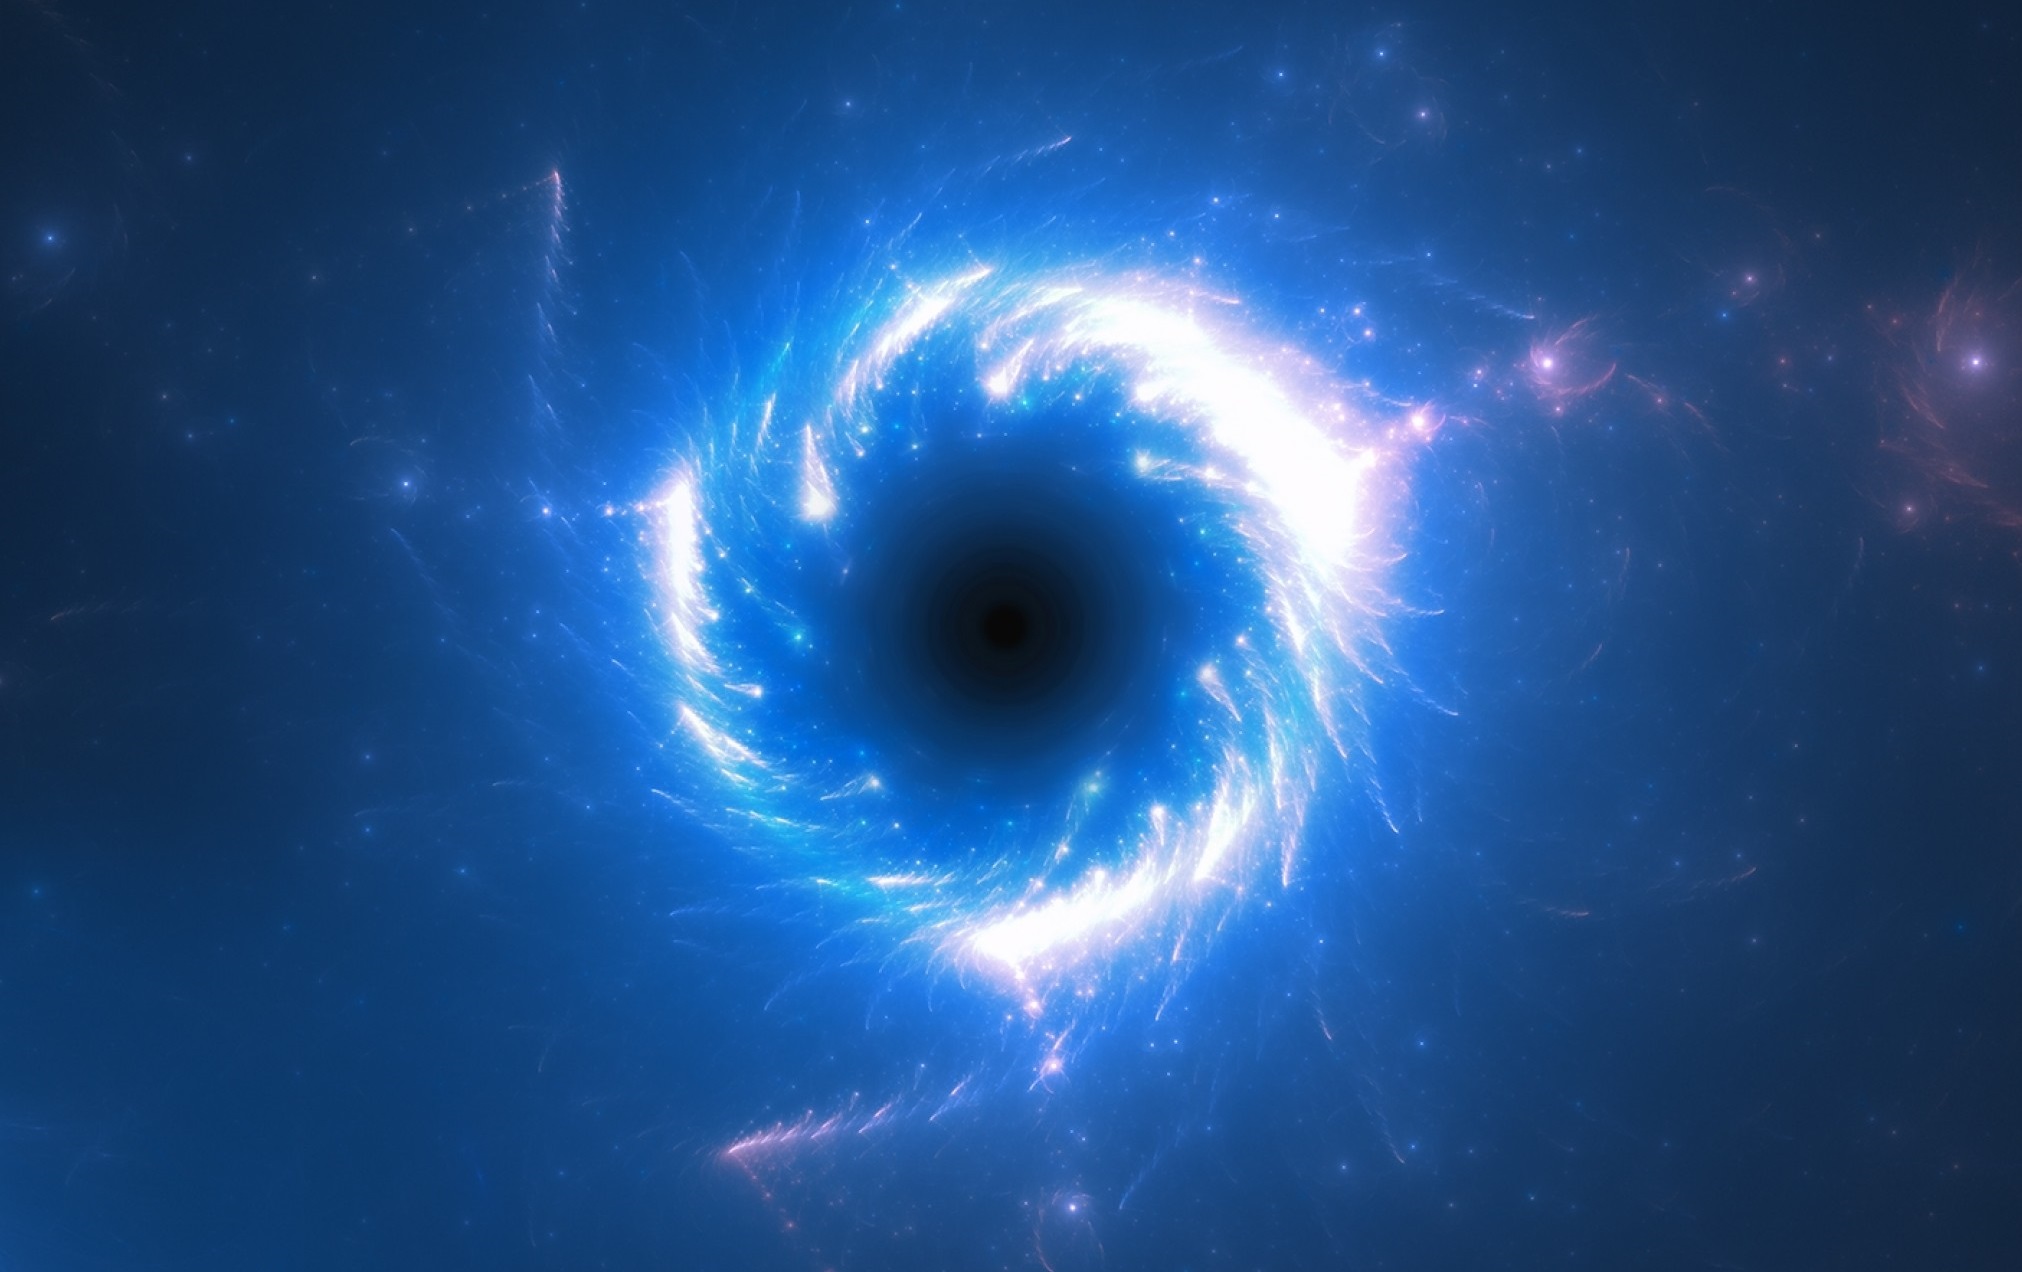 اكتشف علماء الفلك فئة جديدة كاملة من الثقوب السوداء